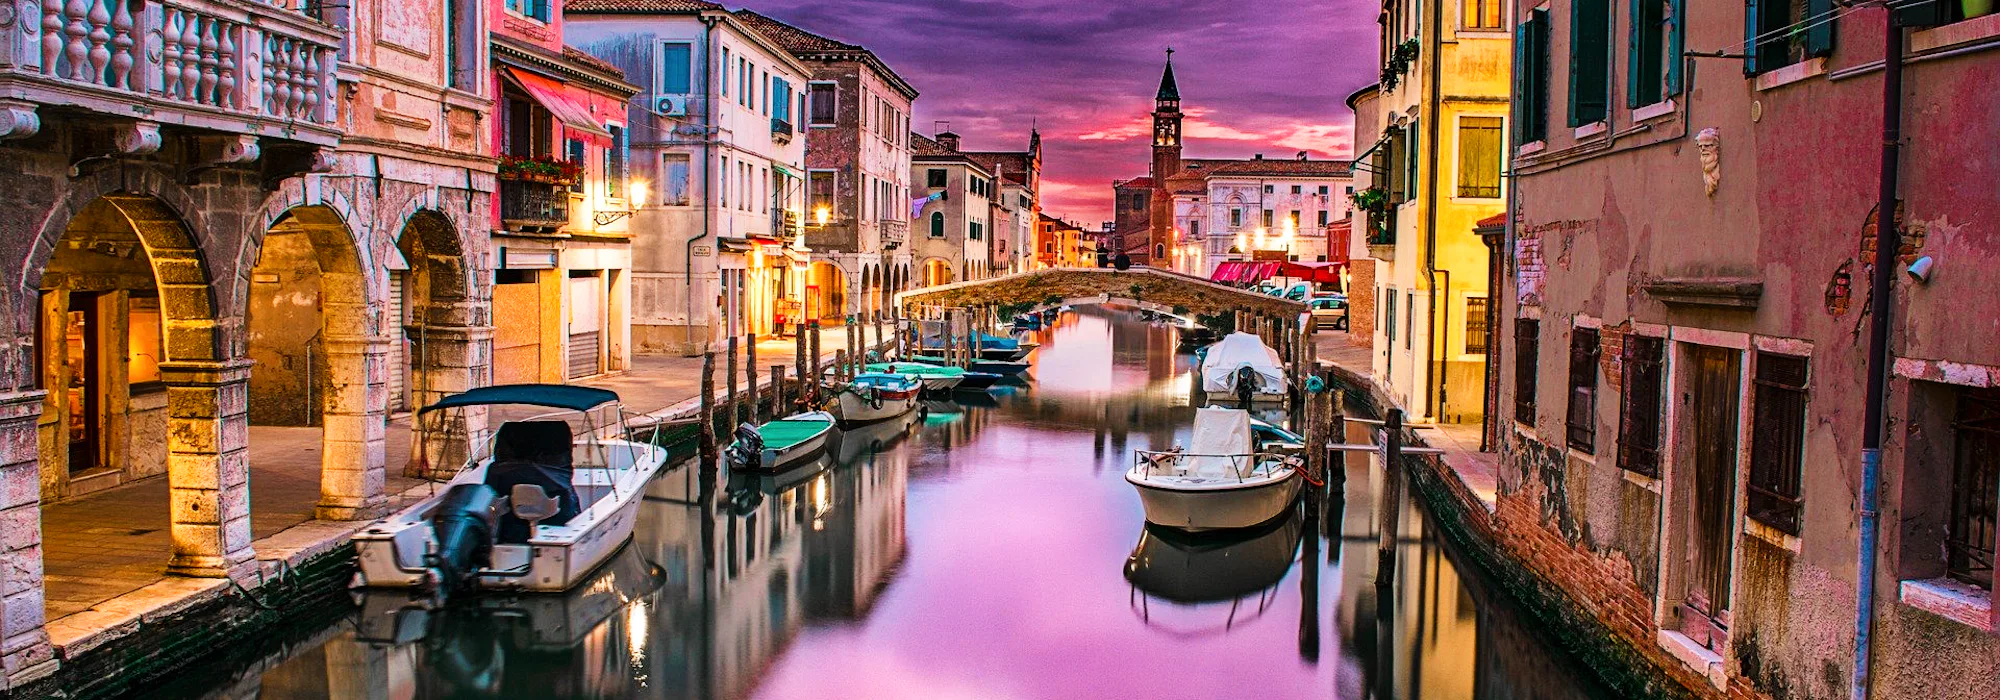 Krydstogt i Middelhavet - Venedig